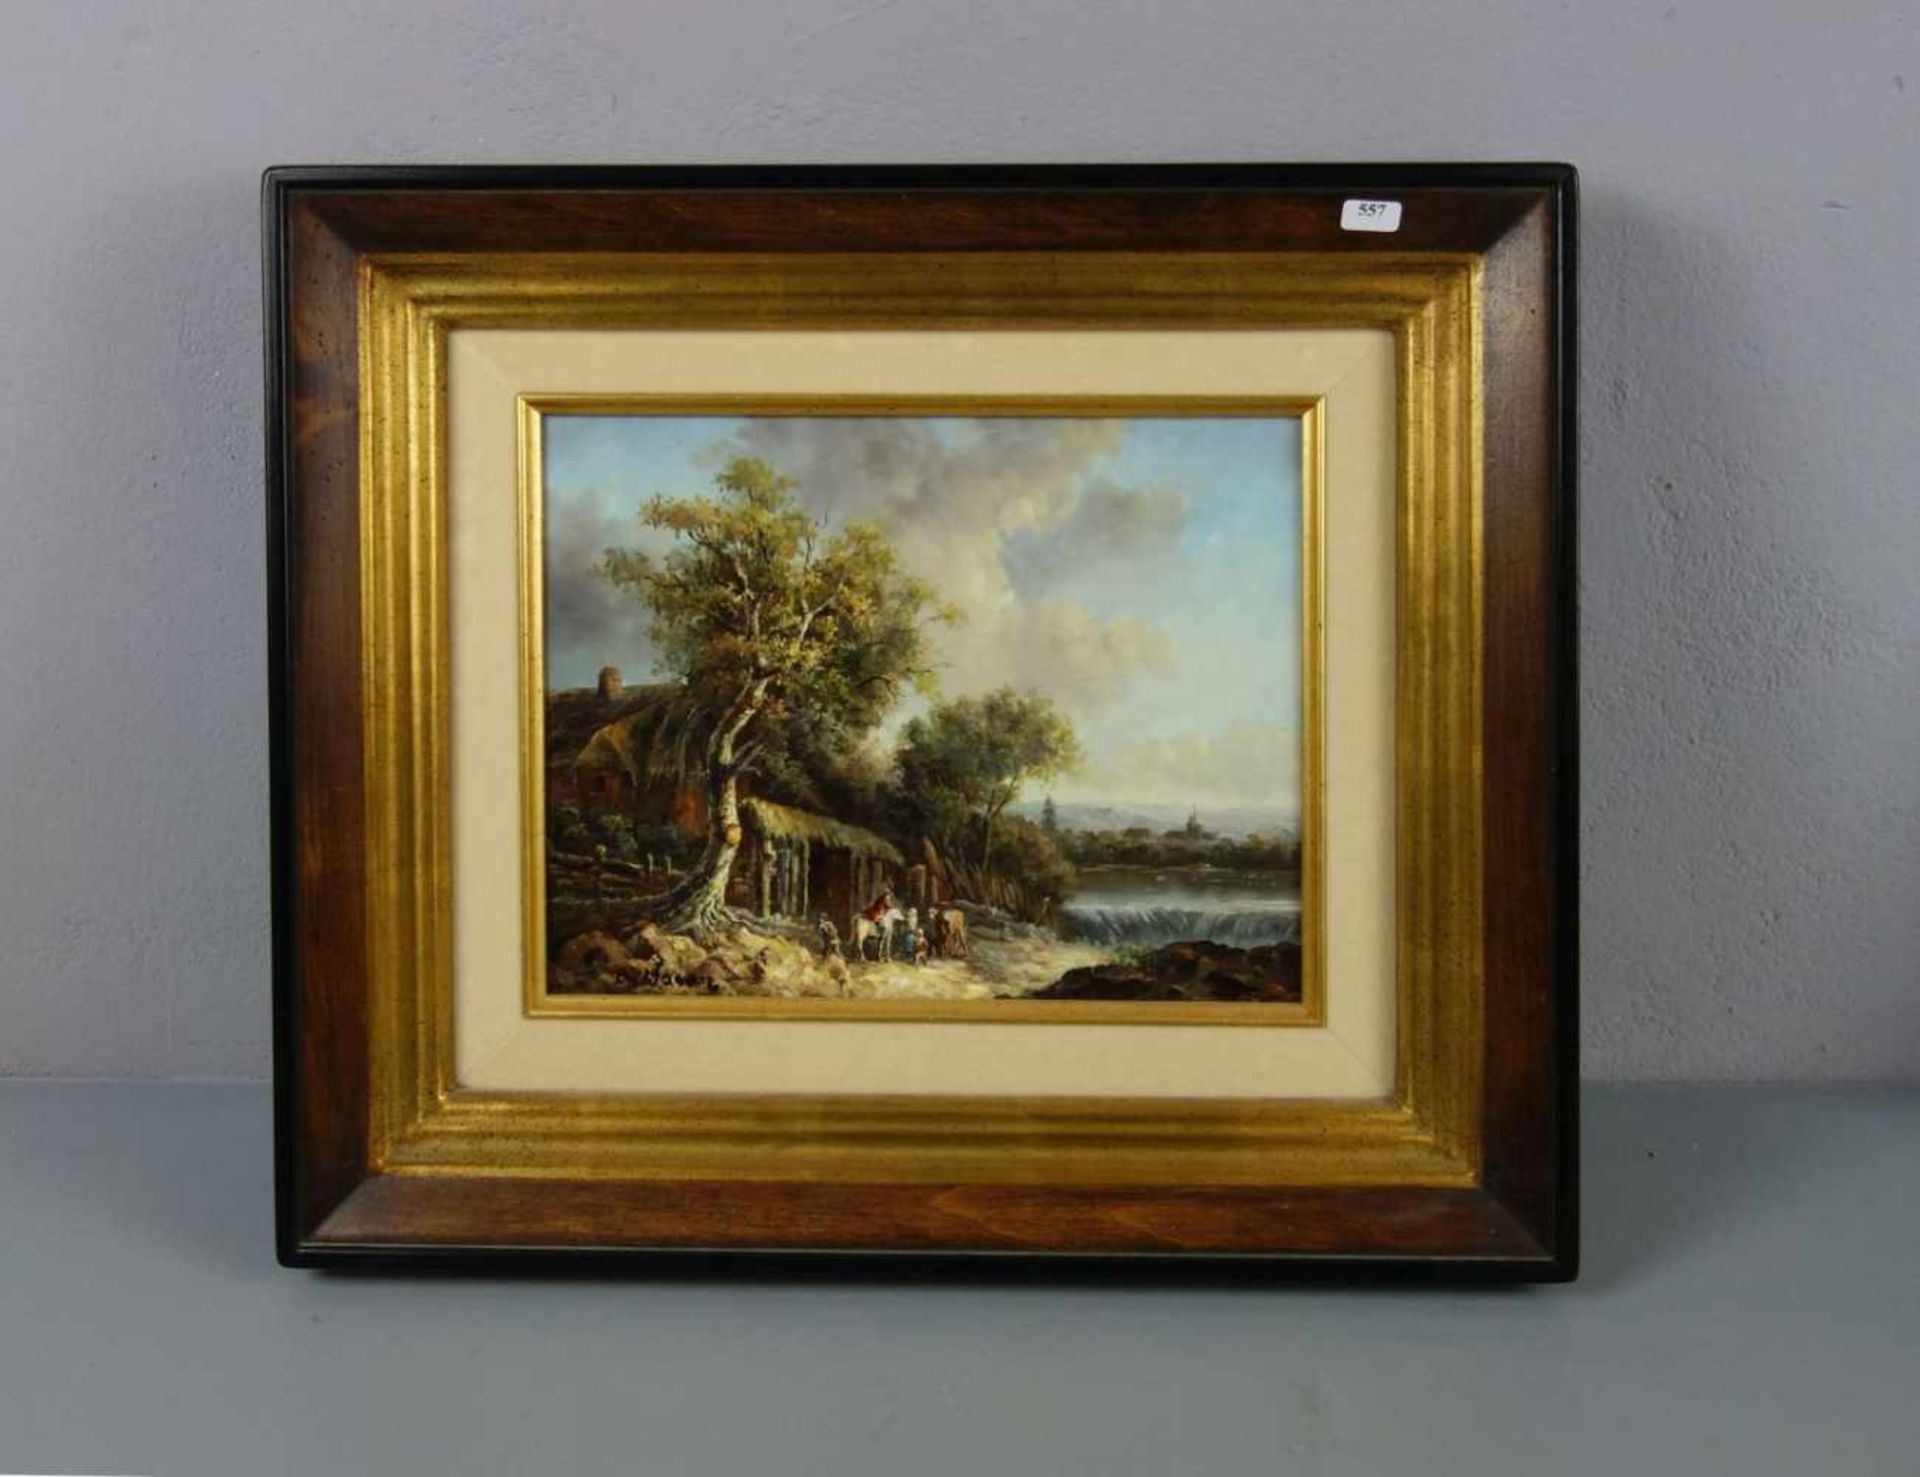 MAERZ oder MAENZ, B. (Maler des 20. Jh.), Gemälde / painting: "Flusslandschaft mit Wehr, Gehöft